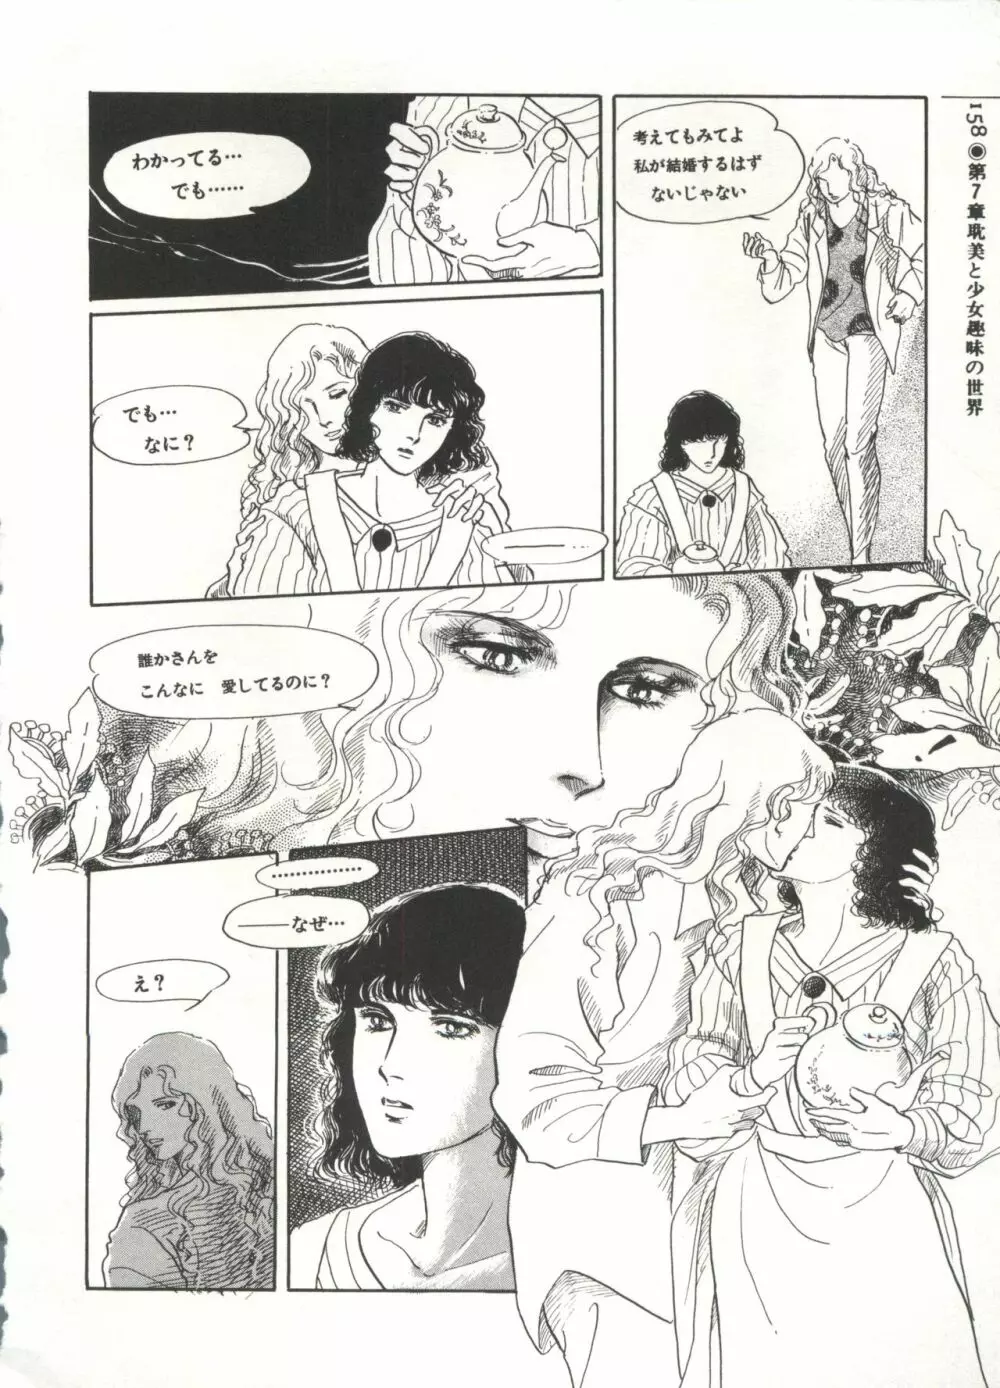 [Anthology] 美少女症候群(2) Lolita syndrome (よろず) 161ページ